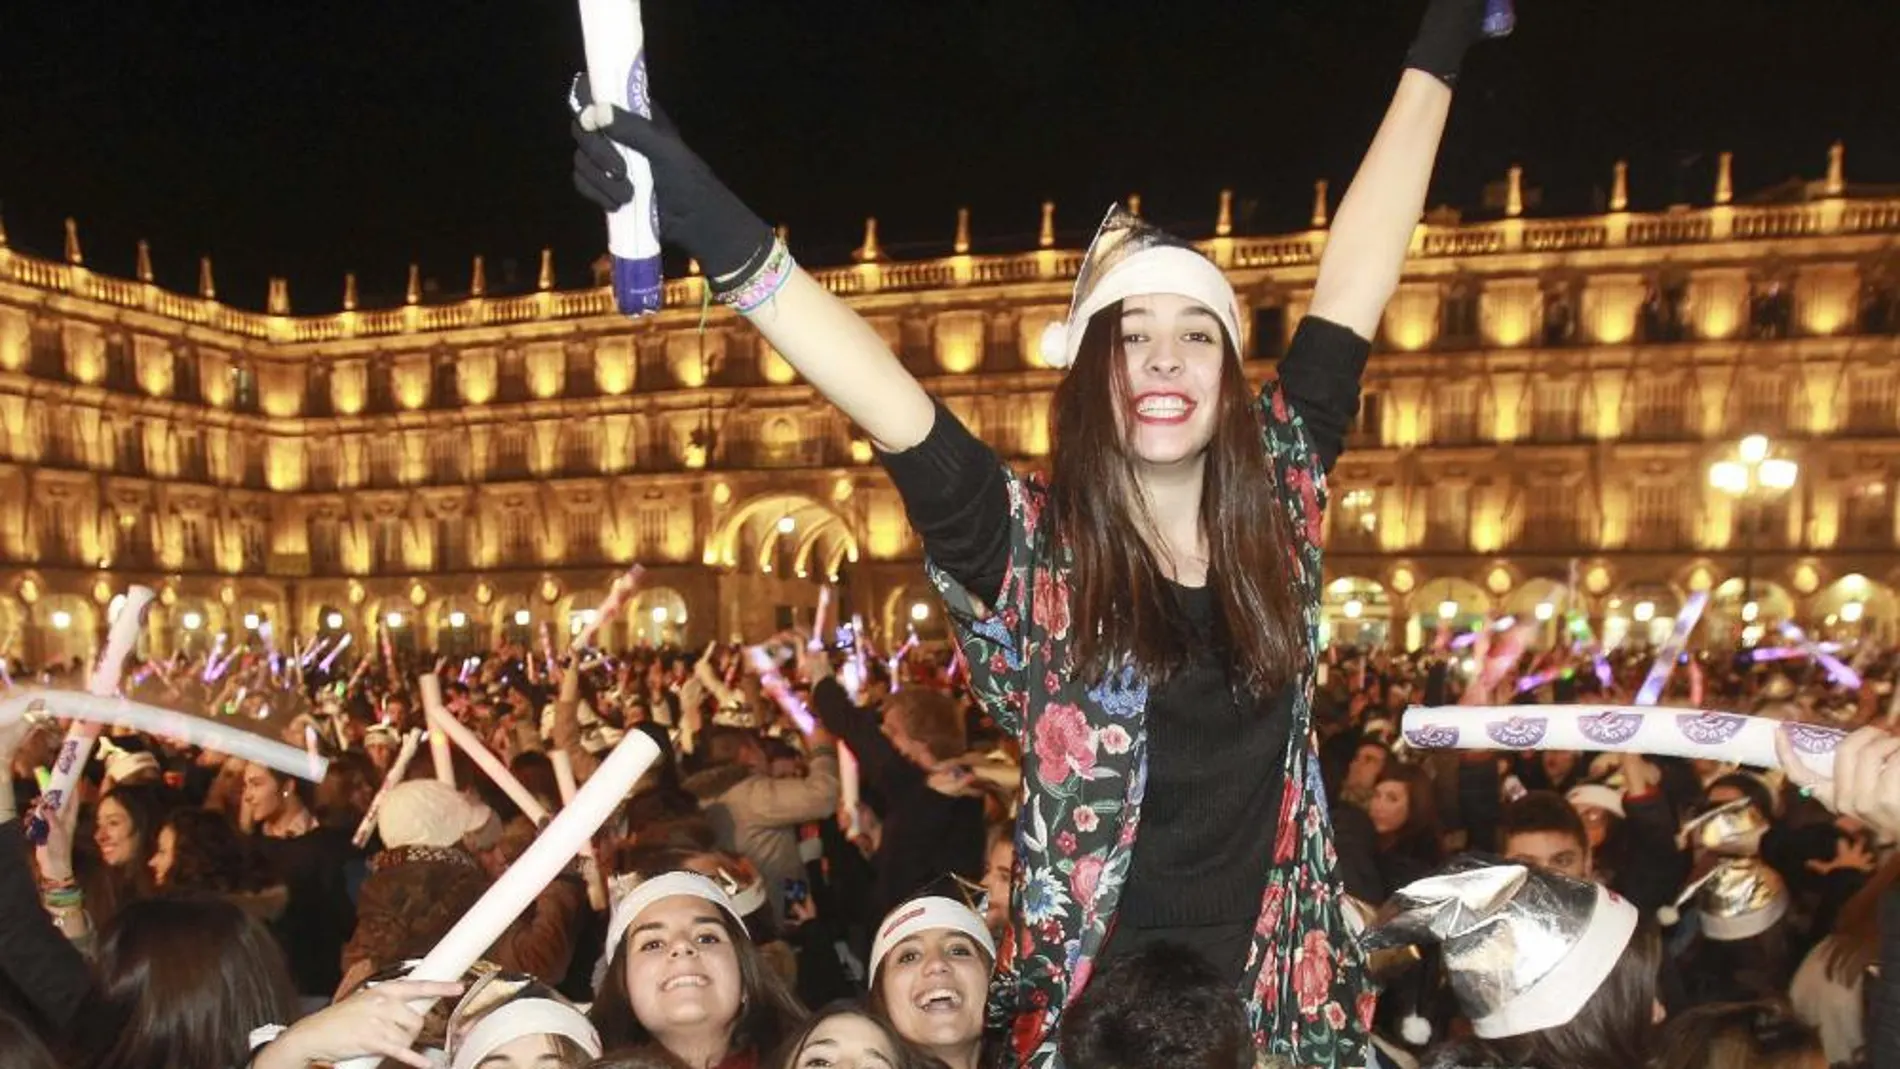 El fin de año anticipado que los jóvenes estudiantes celebran en Salamanca, la conocida como Nochevieja Universitaria, reunió en su Plaza Mayor a más de 45.000 personas.